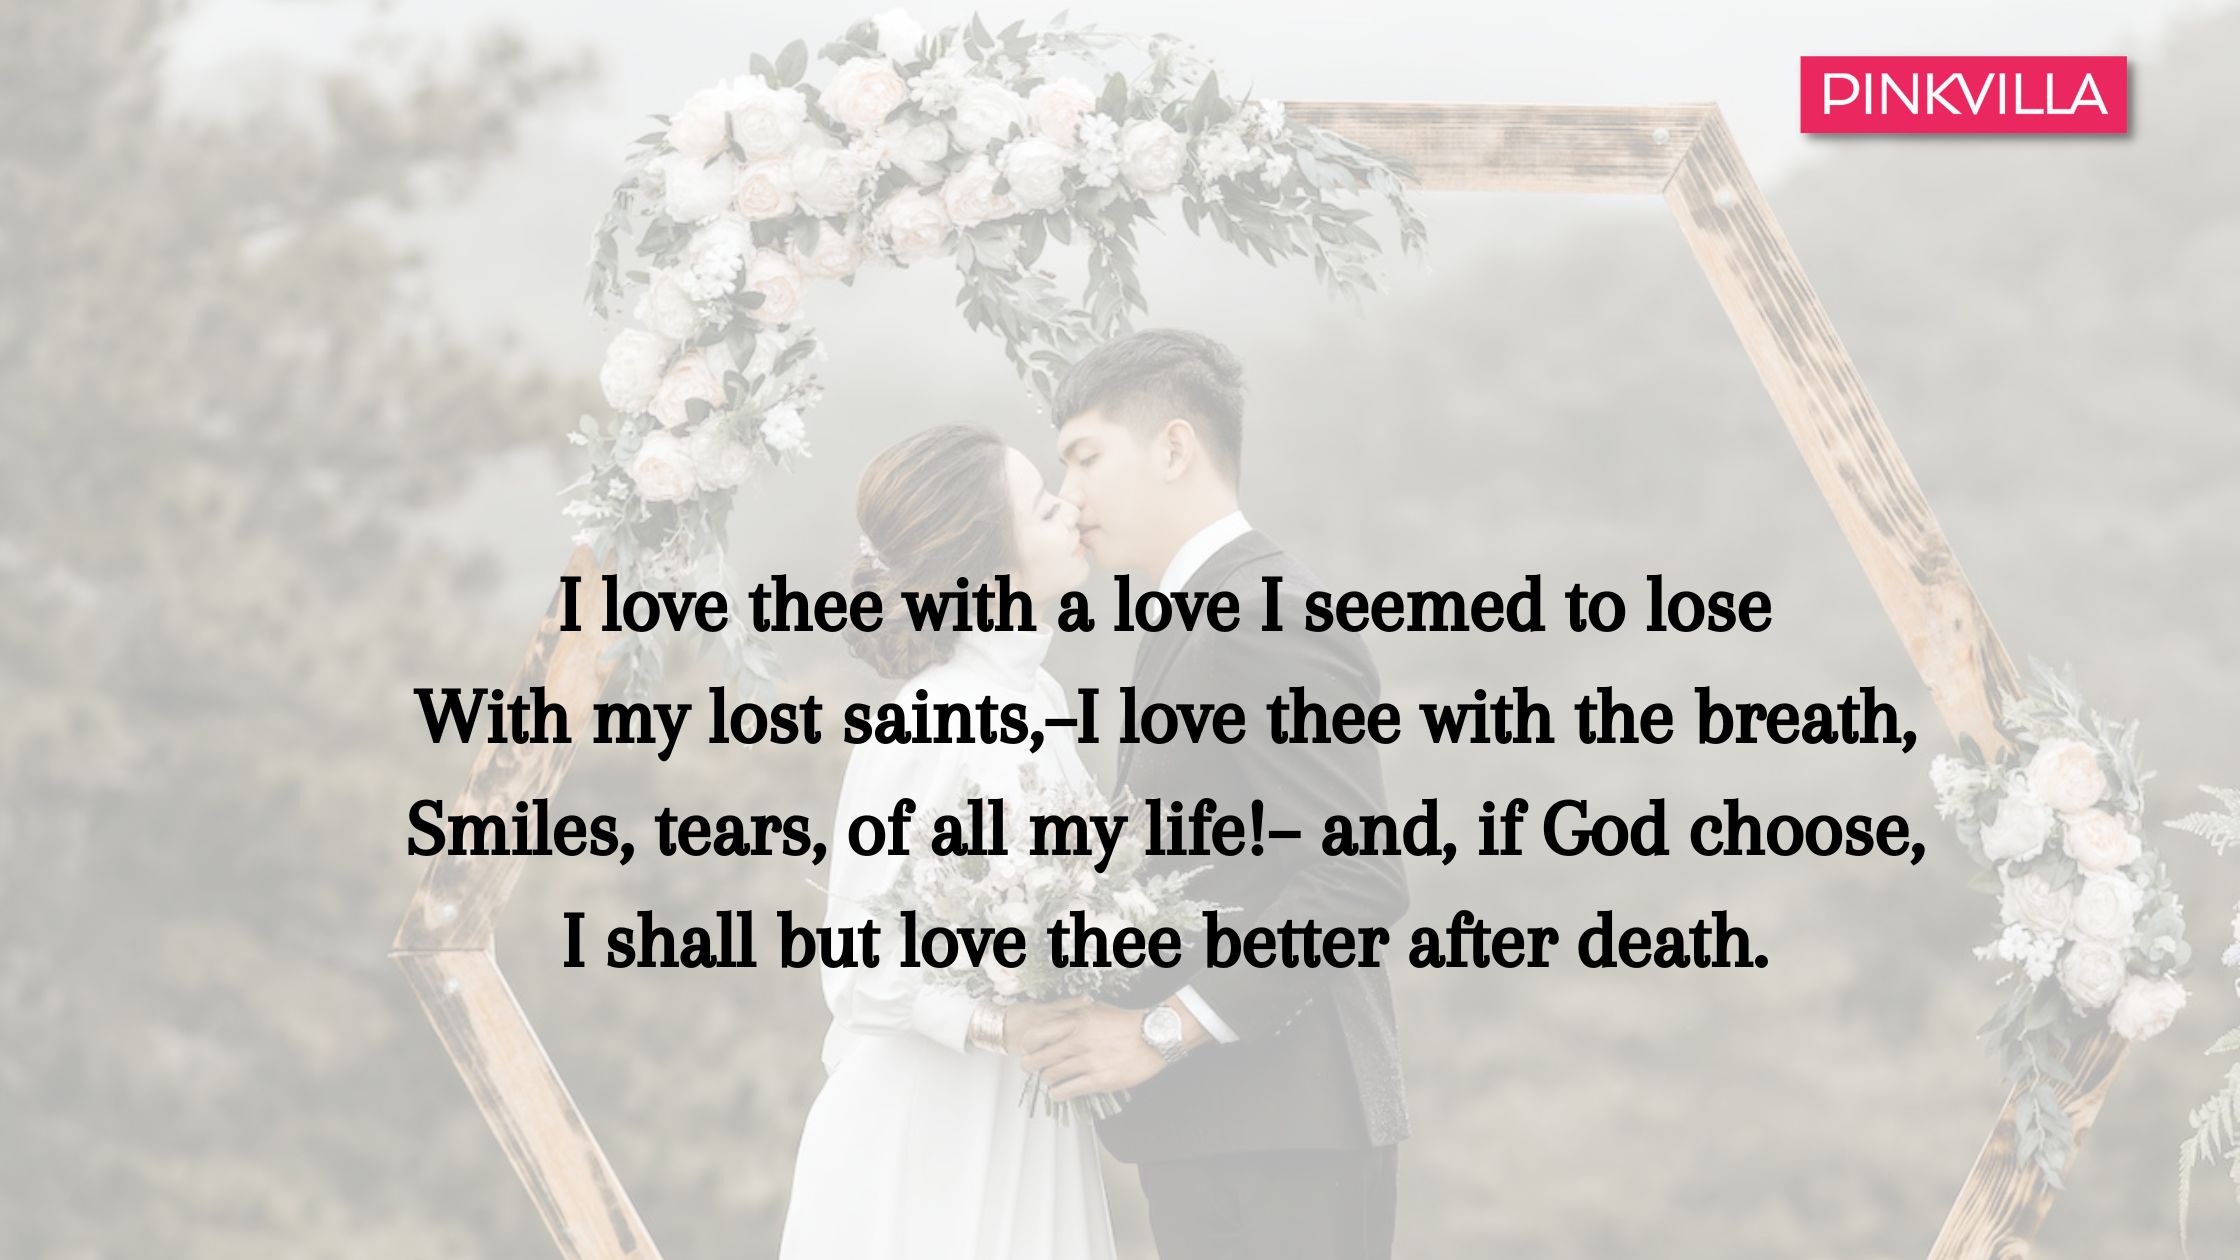 The Meaning Of True Love - The Meaning Of True Love Poem by Ivy Schex